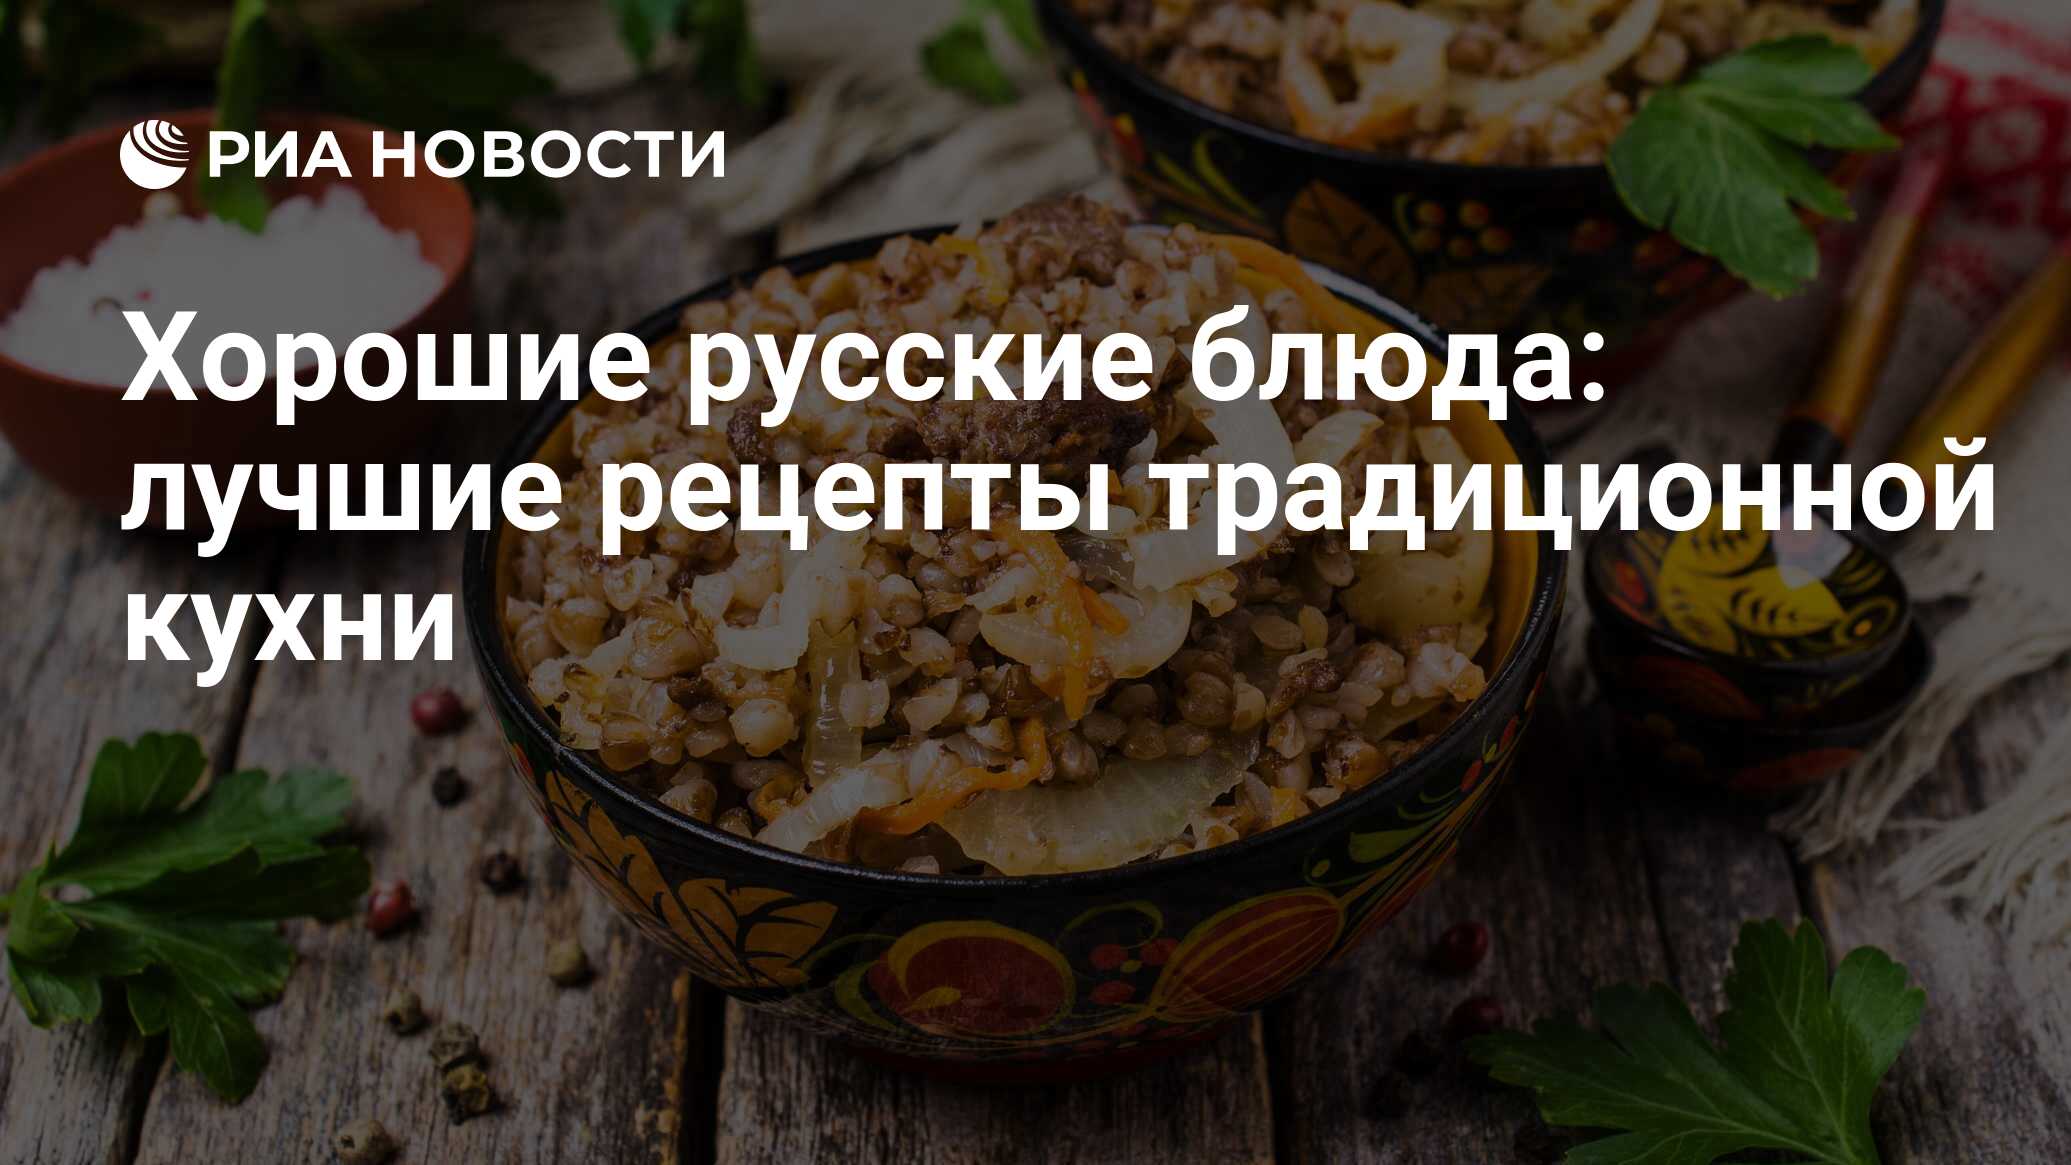 Русские традиционные блюда: проверенных рецептов | Меню недели